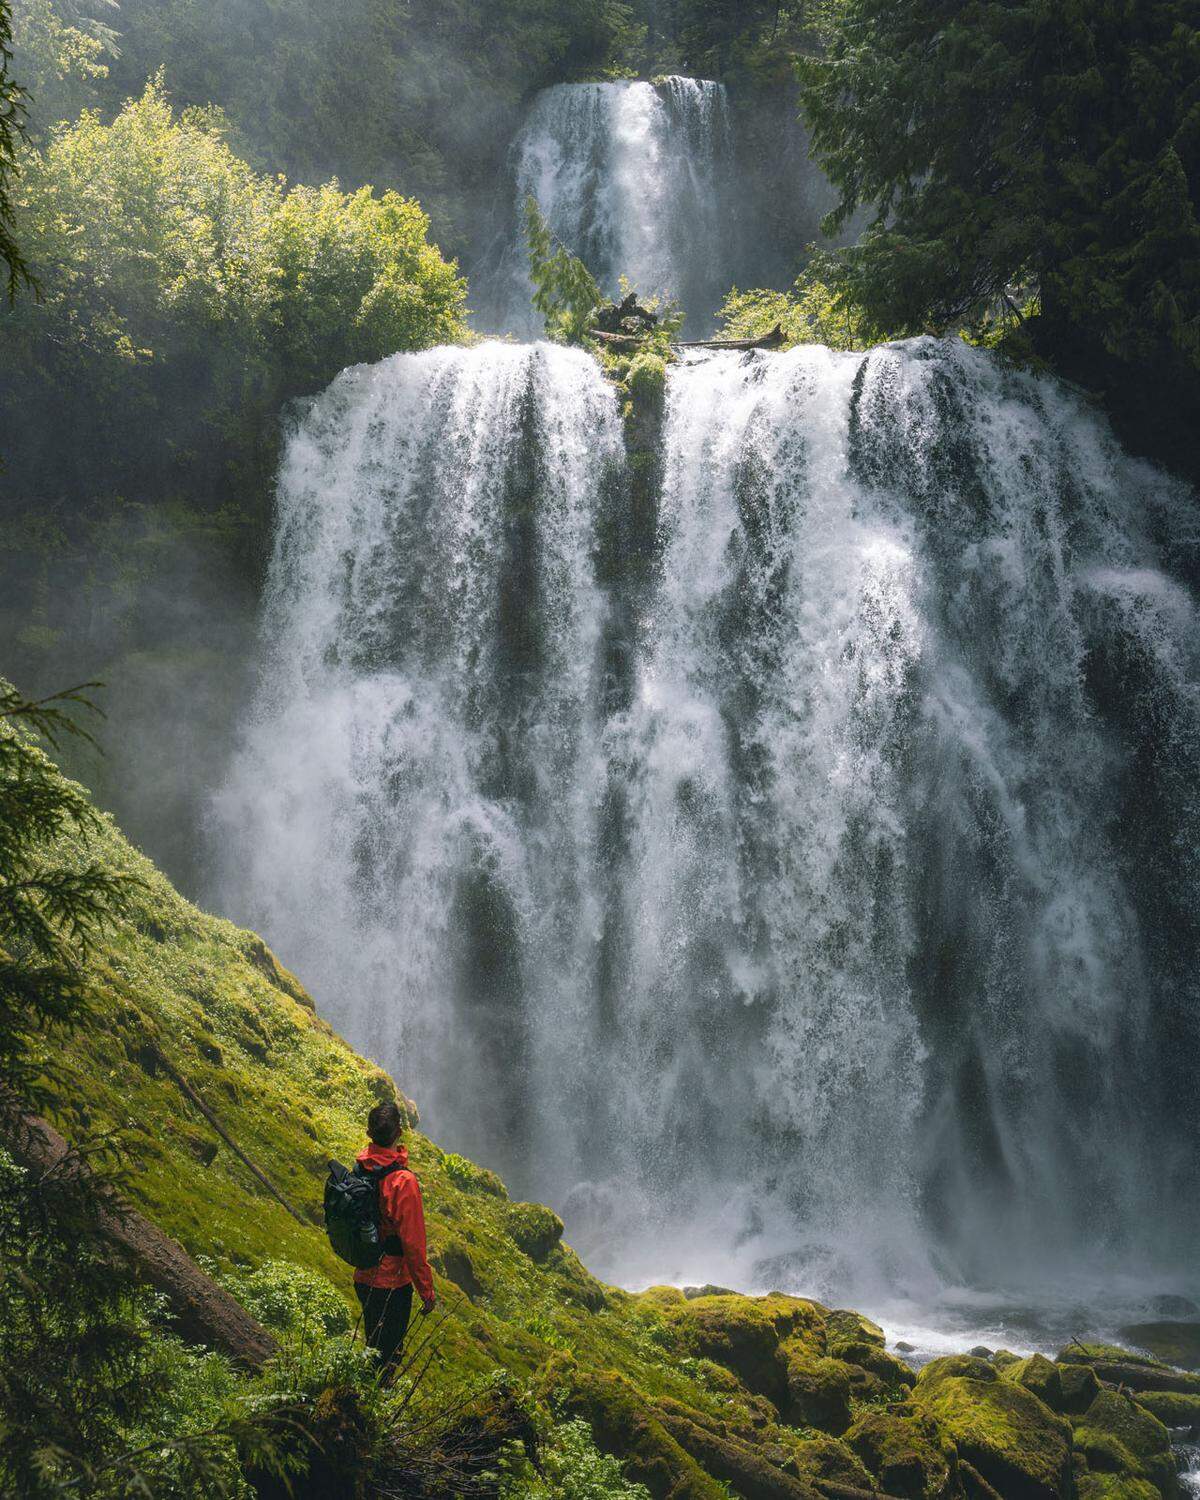 "Life in a fairytale" nennt ein Fotograf aus den USA dieses Bild und zeigt "einen der spektakulärsten Orte, die ich in Oregon gesehen habe".